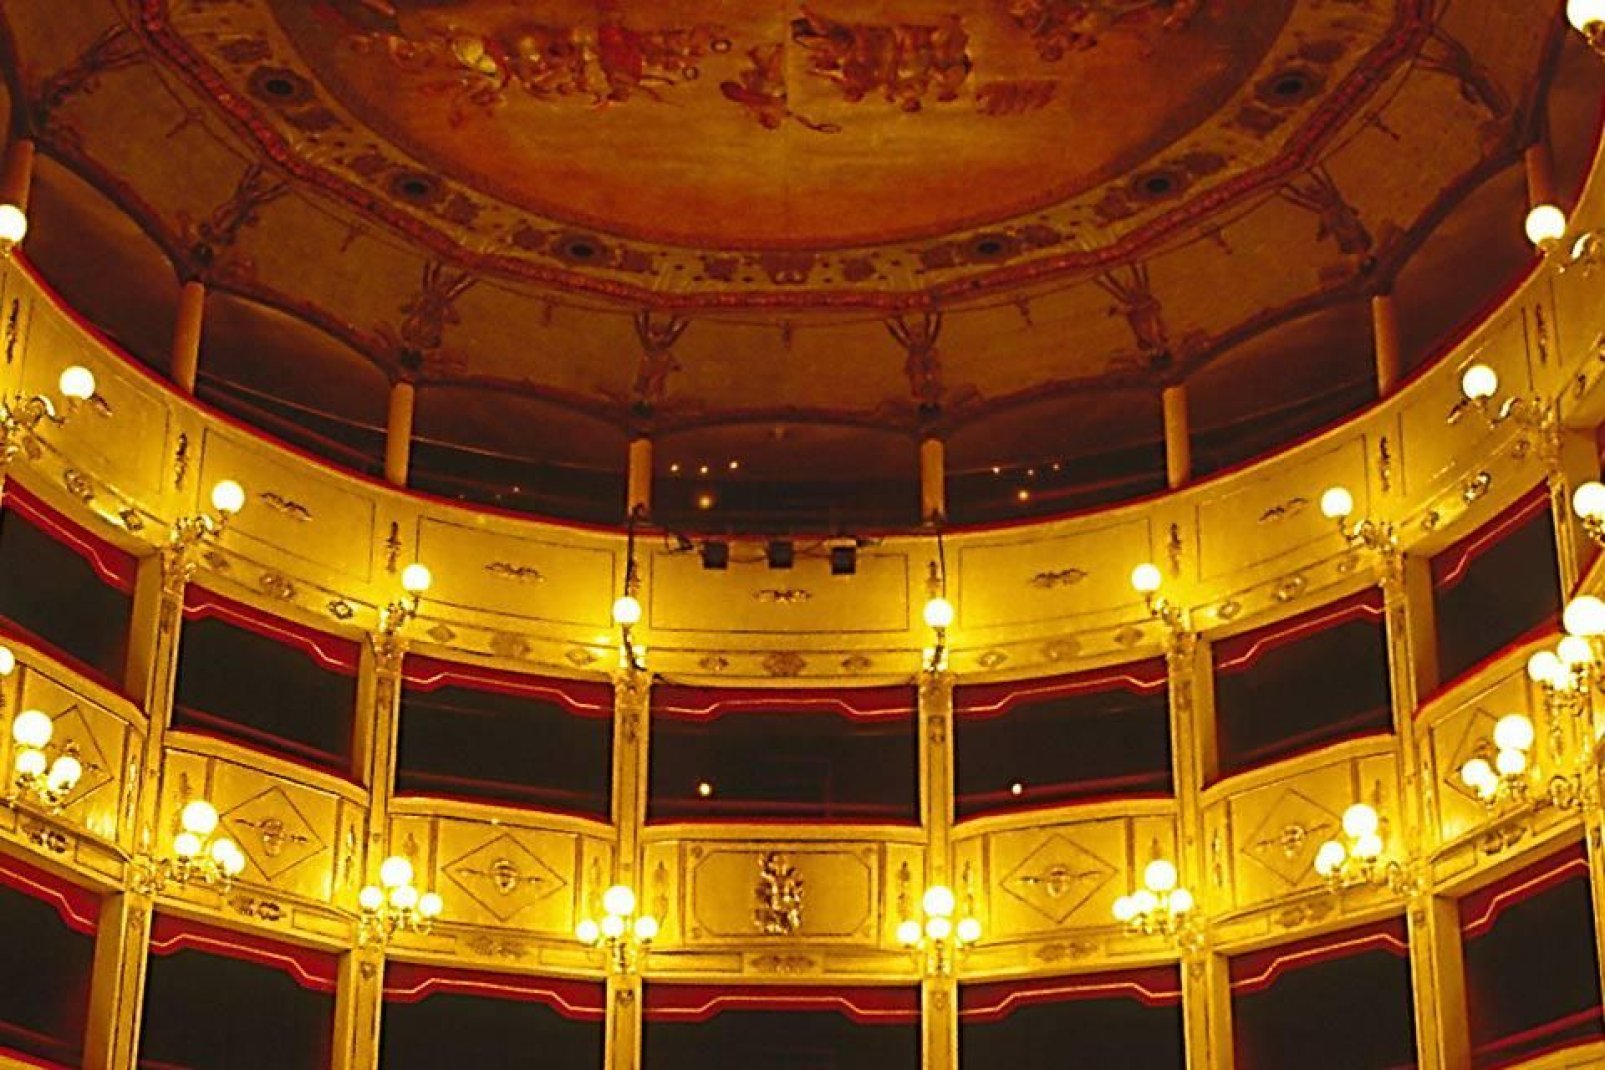 Se inauguró el 26 de enero de 1881 en presencia del rey Humberto I, el príncipe Amadeo y la reina de Italia, que asistieron a una representación de la Traviata.